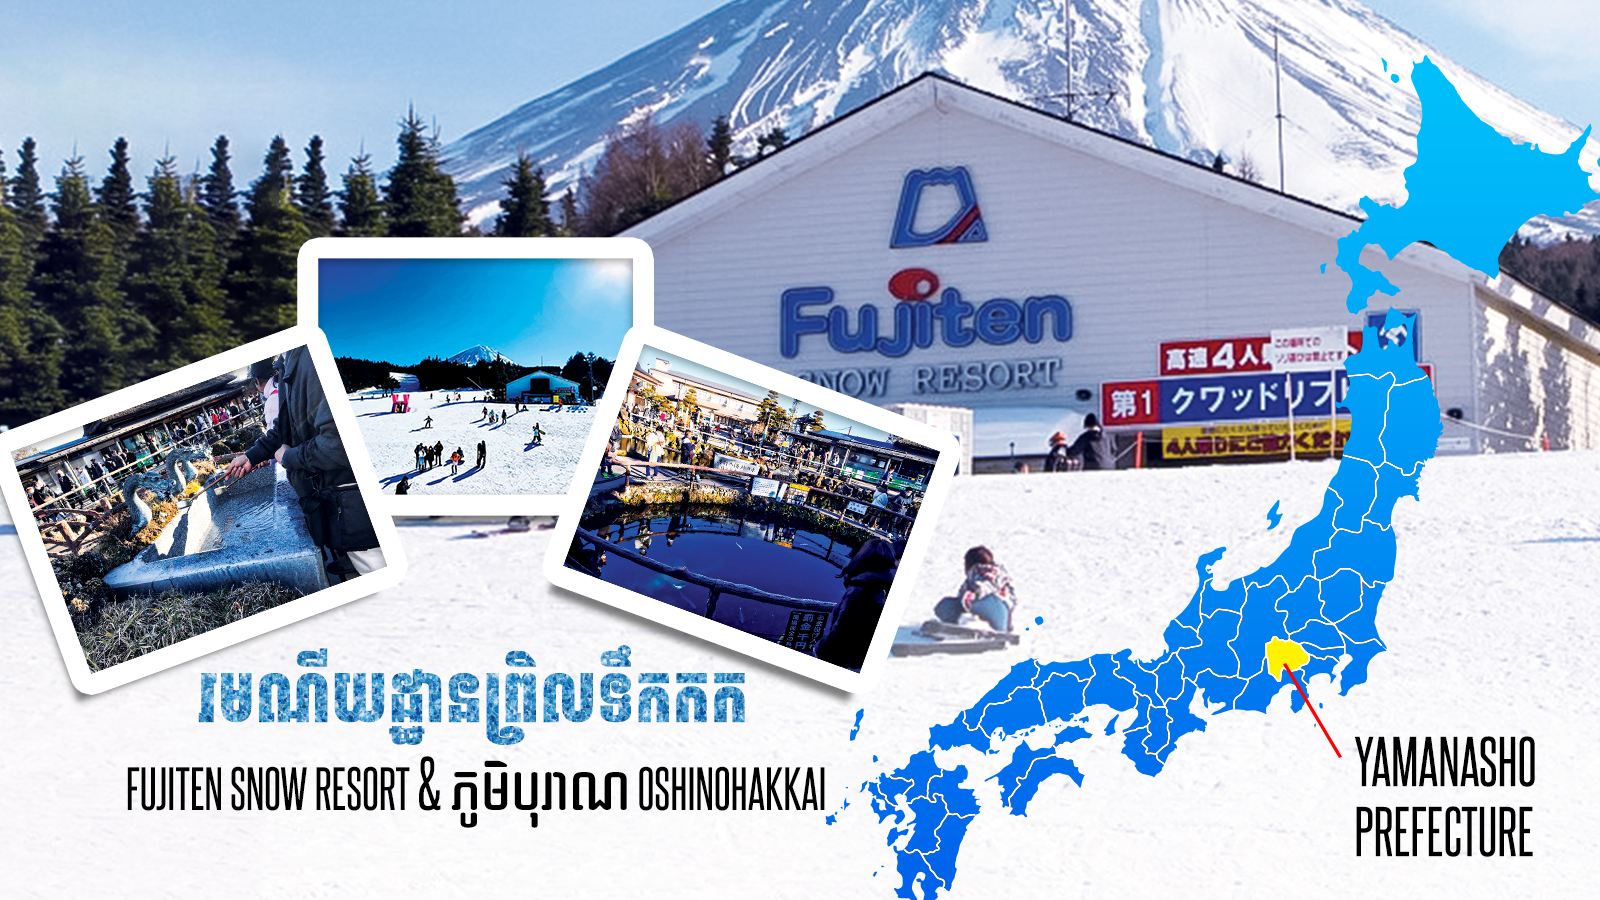 (ភាសាខ្មែរ) ដំណើរកម្សាន្តវិលល្ងាចពីទីក្រុងតូក្យូ រមណីយដ្ឋានព្រិលទឹកកក Fujiten Snow Resort & ភូមិបុរាណ Oshinohakkai